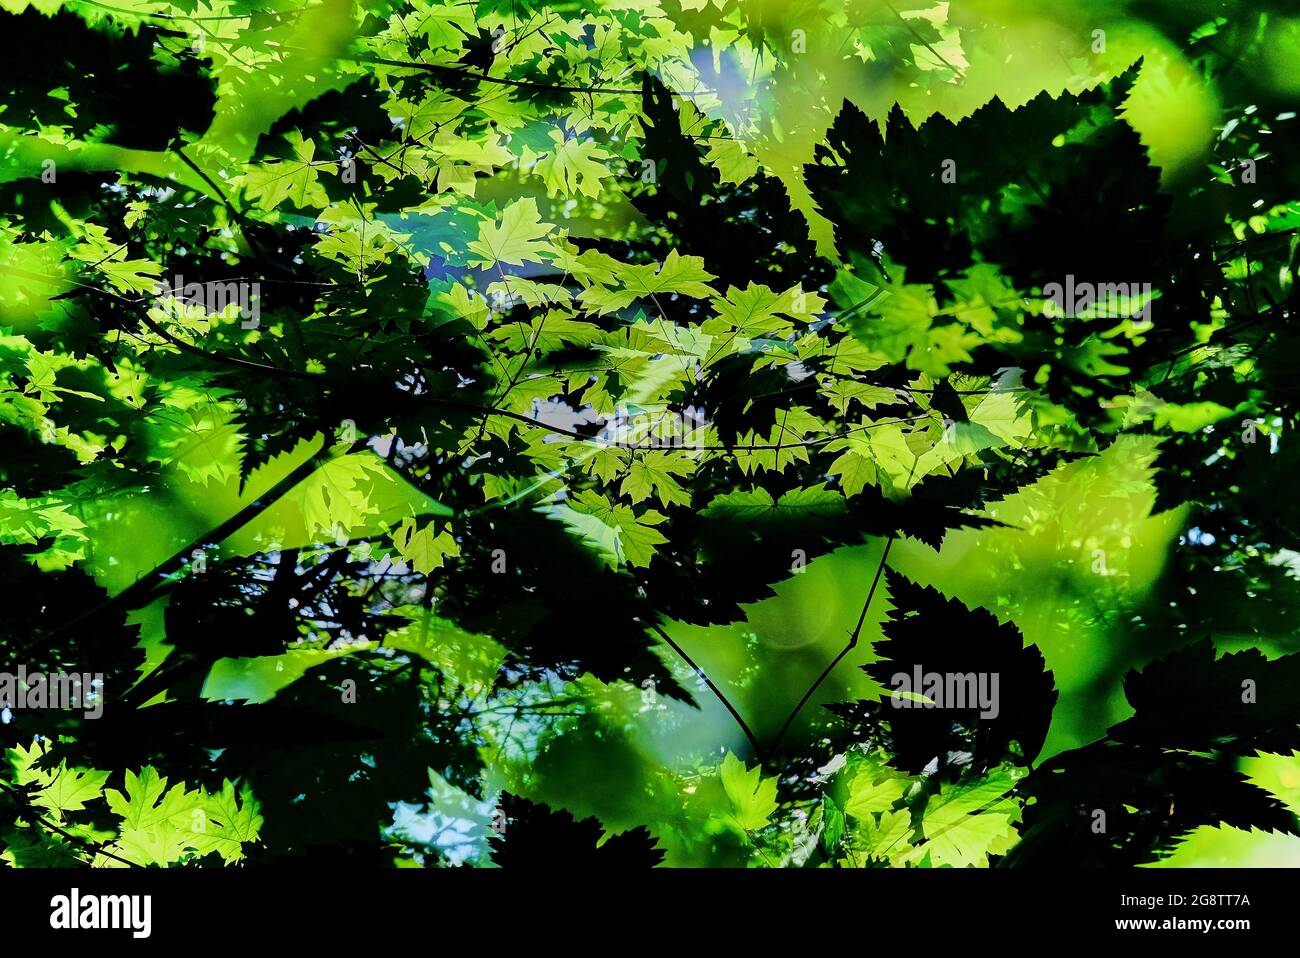 Doppia esposizione astratta del sole che splende attraverso foglie di acero verde brillante sovrapposte alla collezione di foglie silhouette lungo lo stesso sentiero forestale Foto Stock